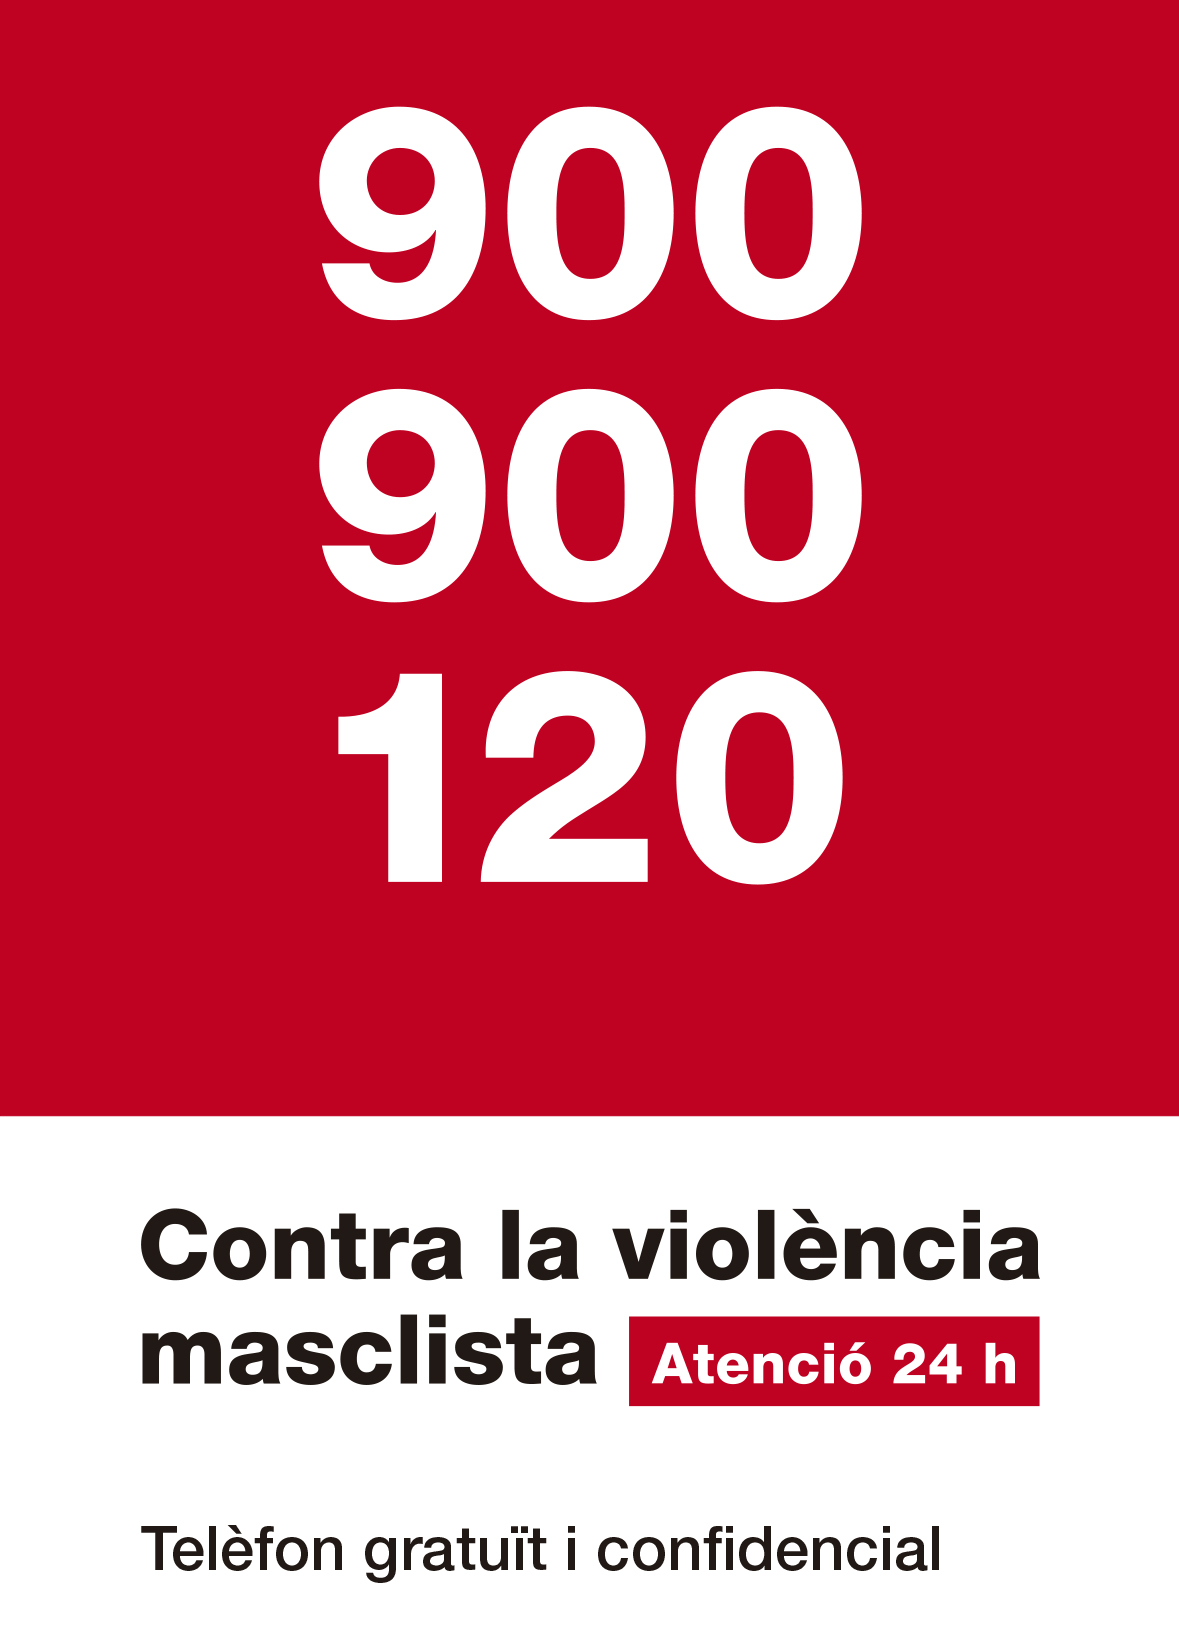 Mesures contra la violència masclista: reforç de la línia 900, nou correu electrònic i campanya “Establiment segur”